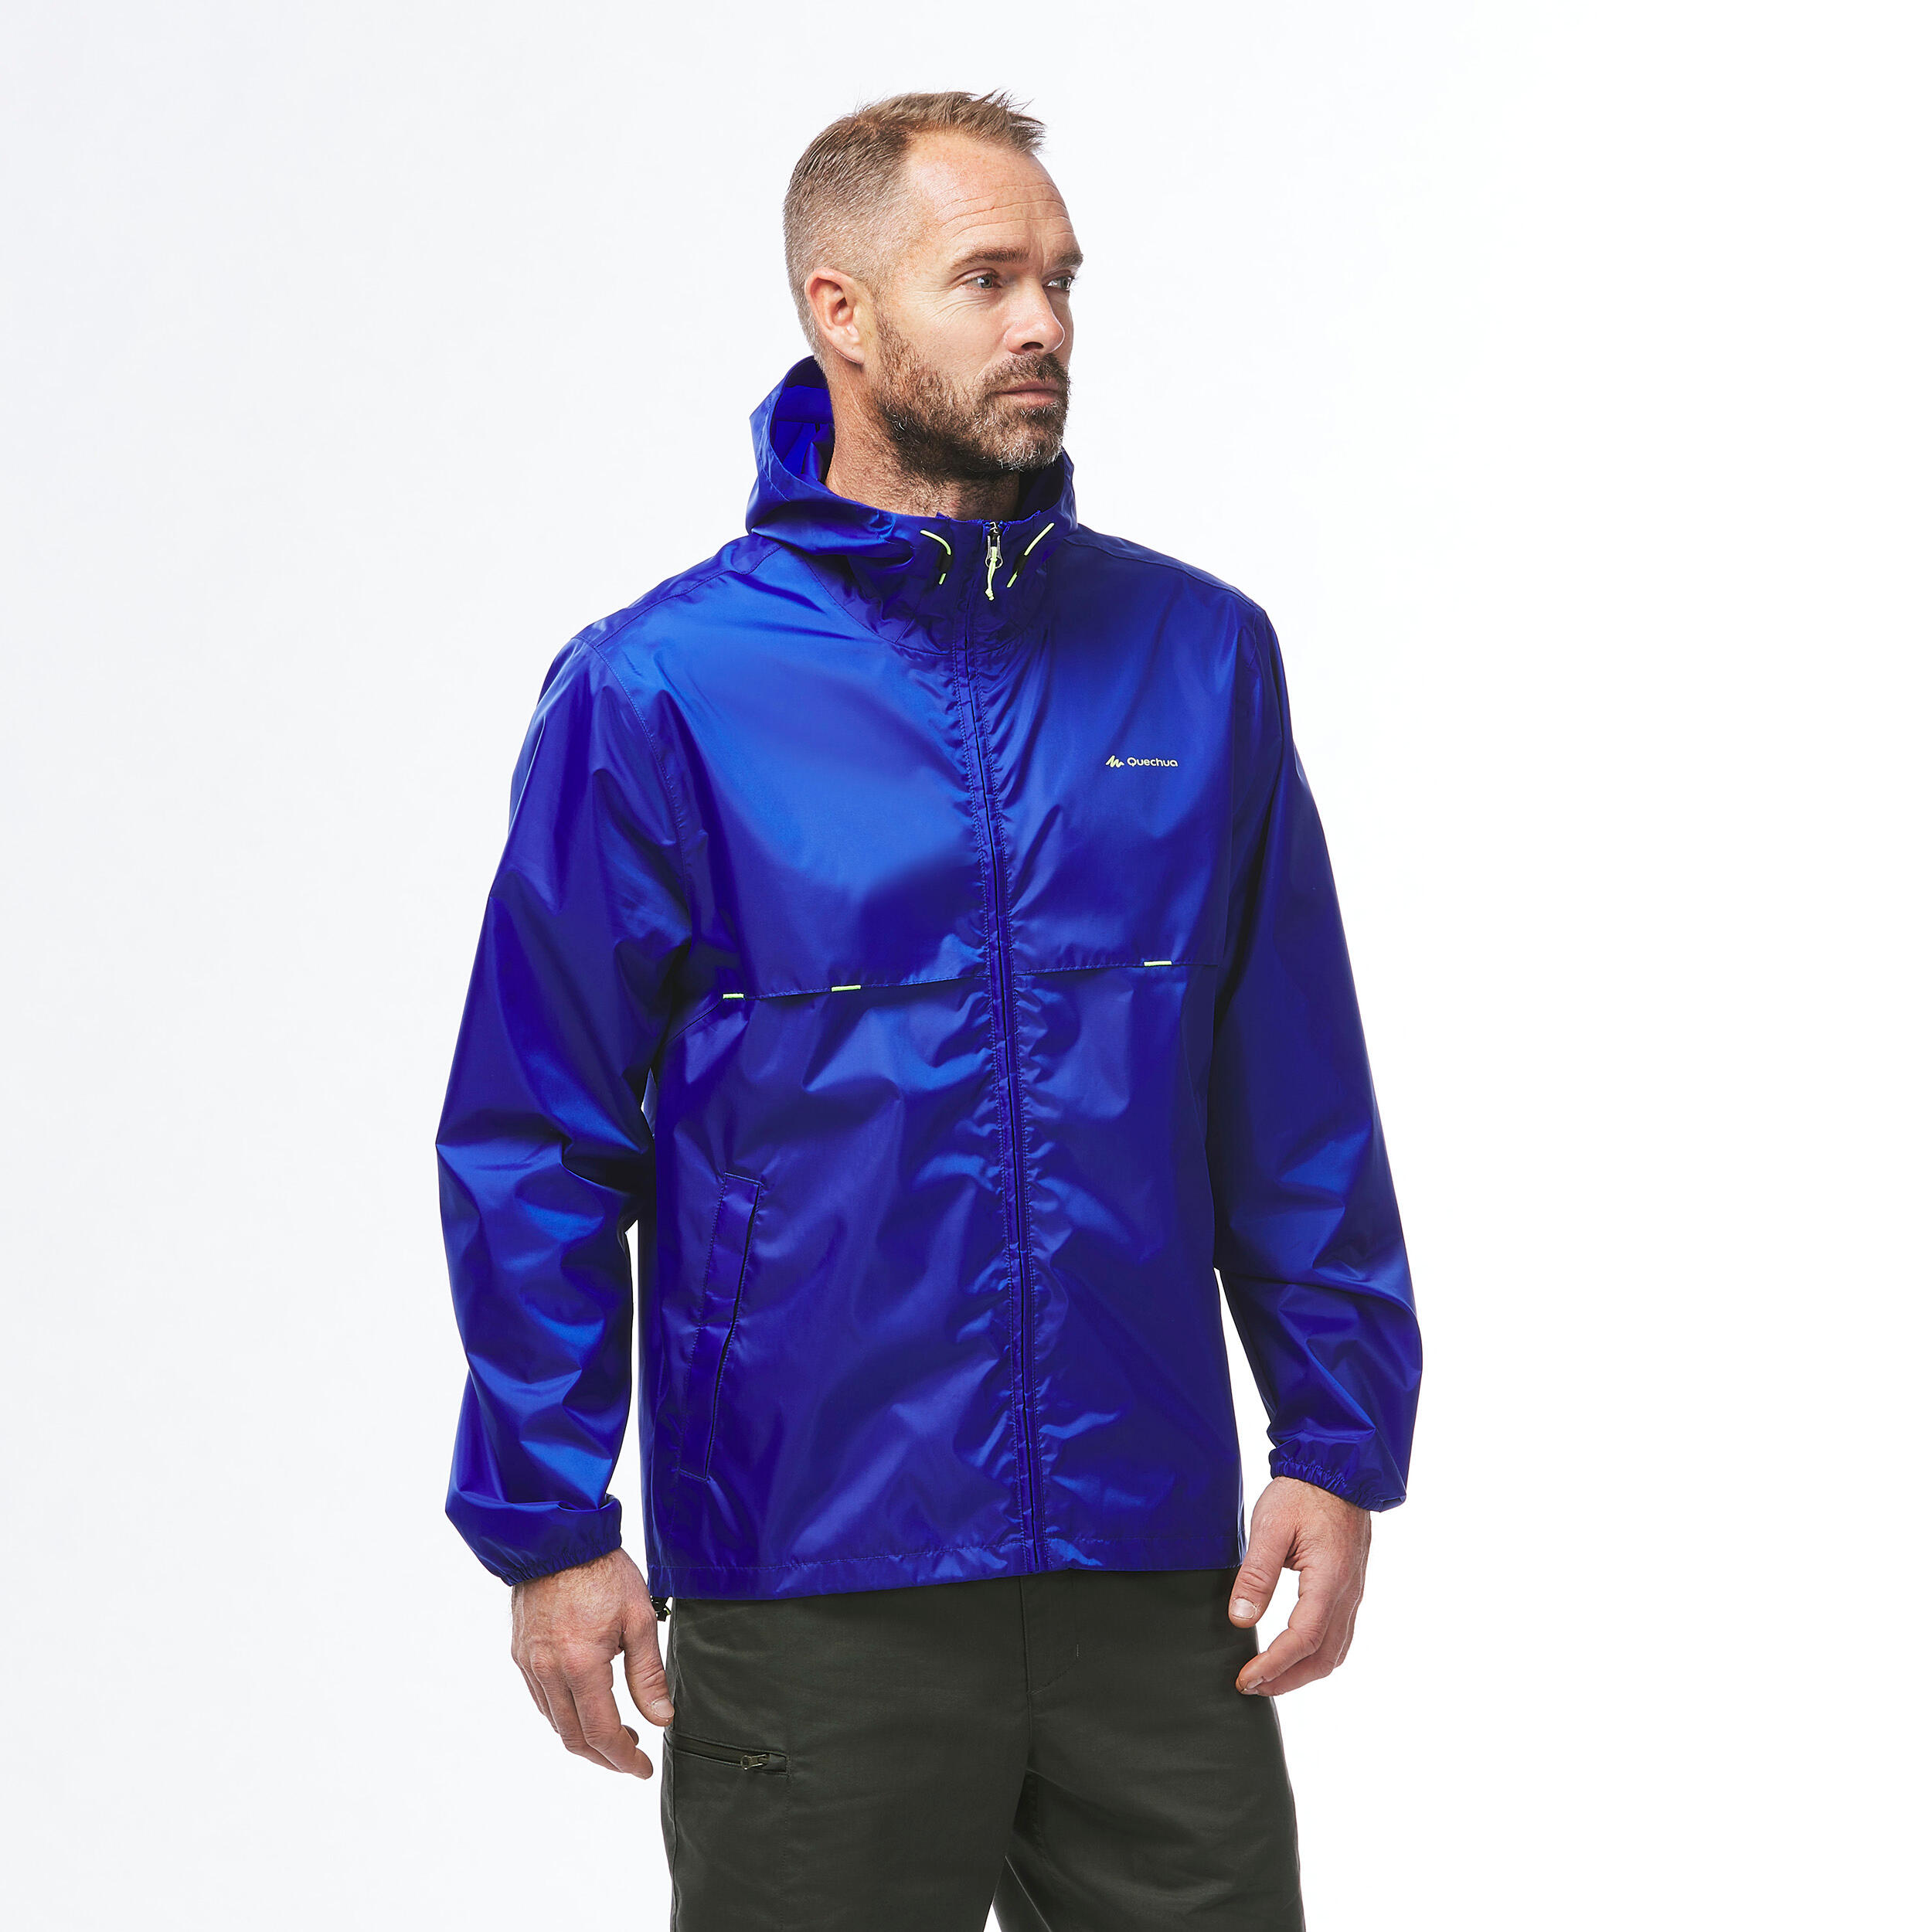 Men's Windproof and Water-repellent Hiking Jacket - Raincut Full Zip 5/9